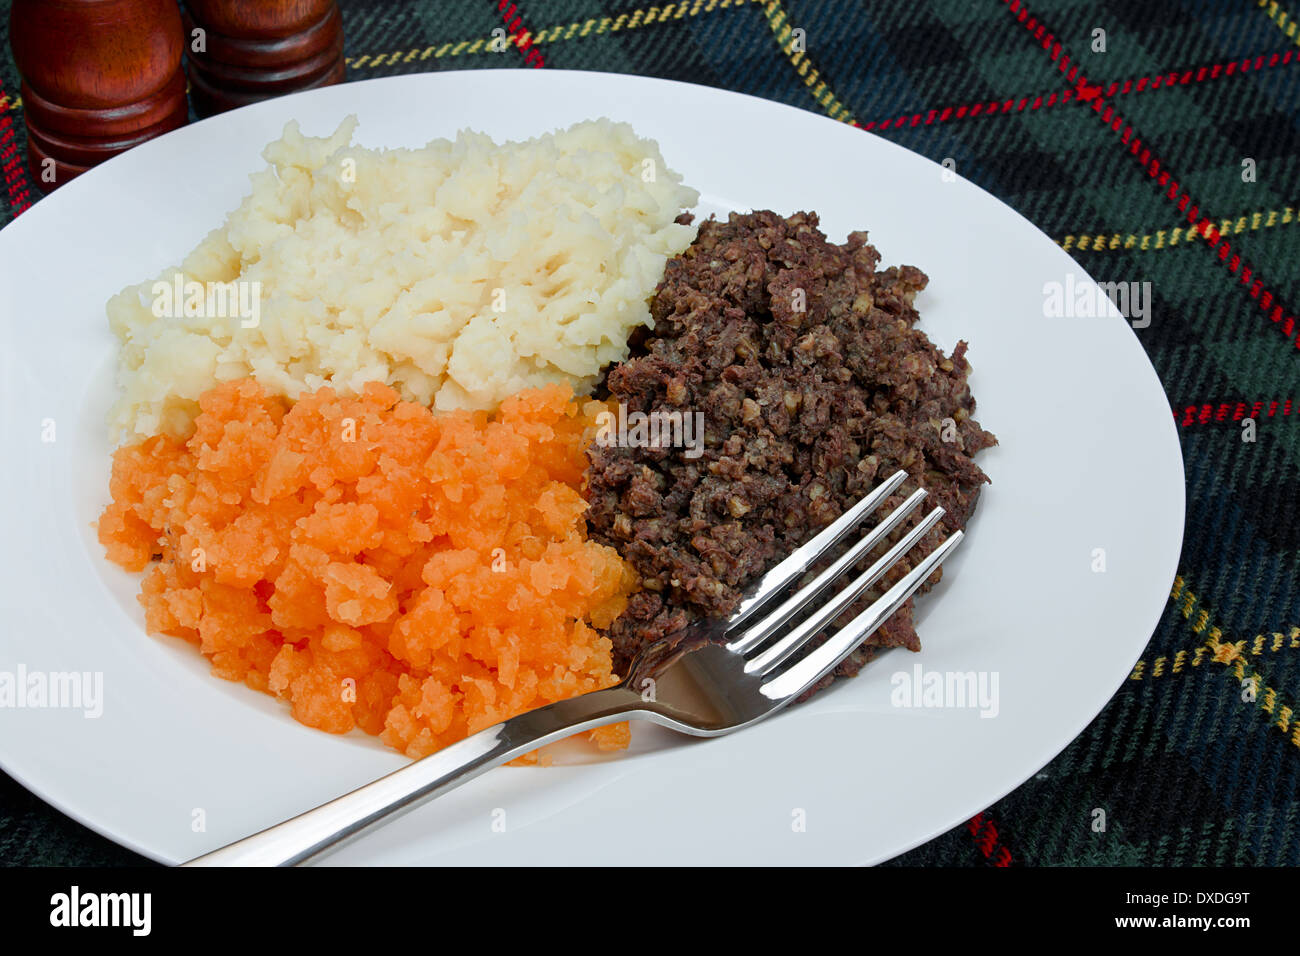 Haggis écossais traditionnel, neeps tatties et également connu sous le nom de burns supper. Banque D'Images